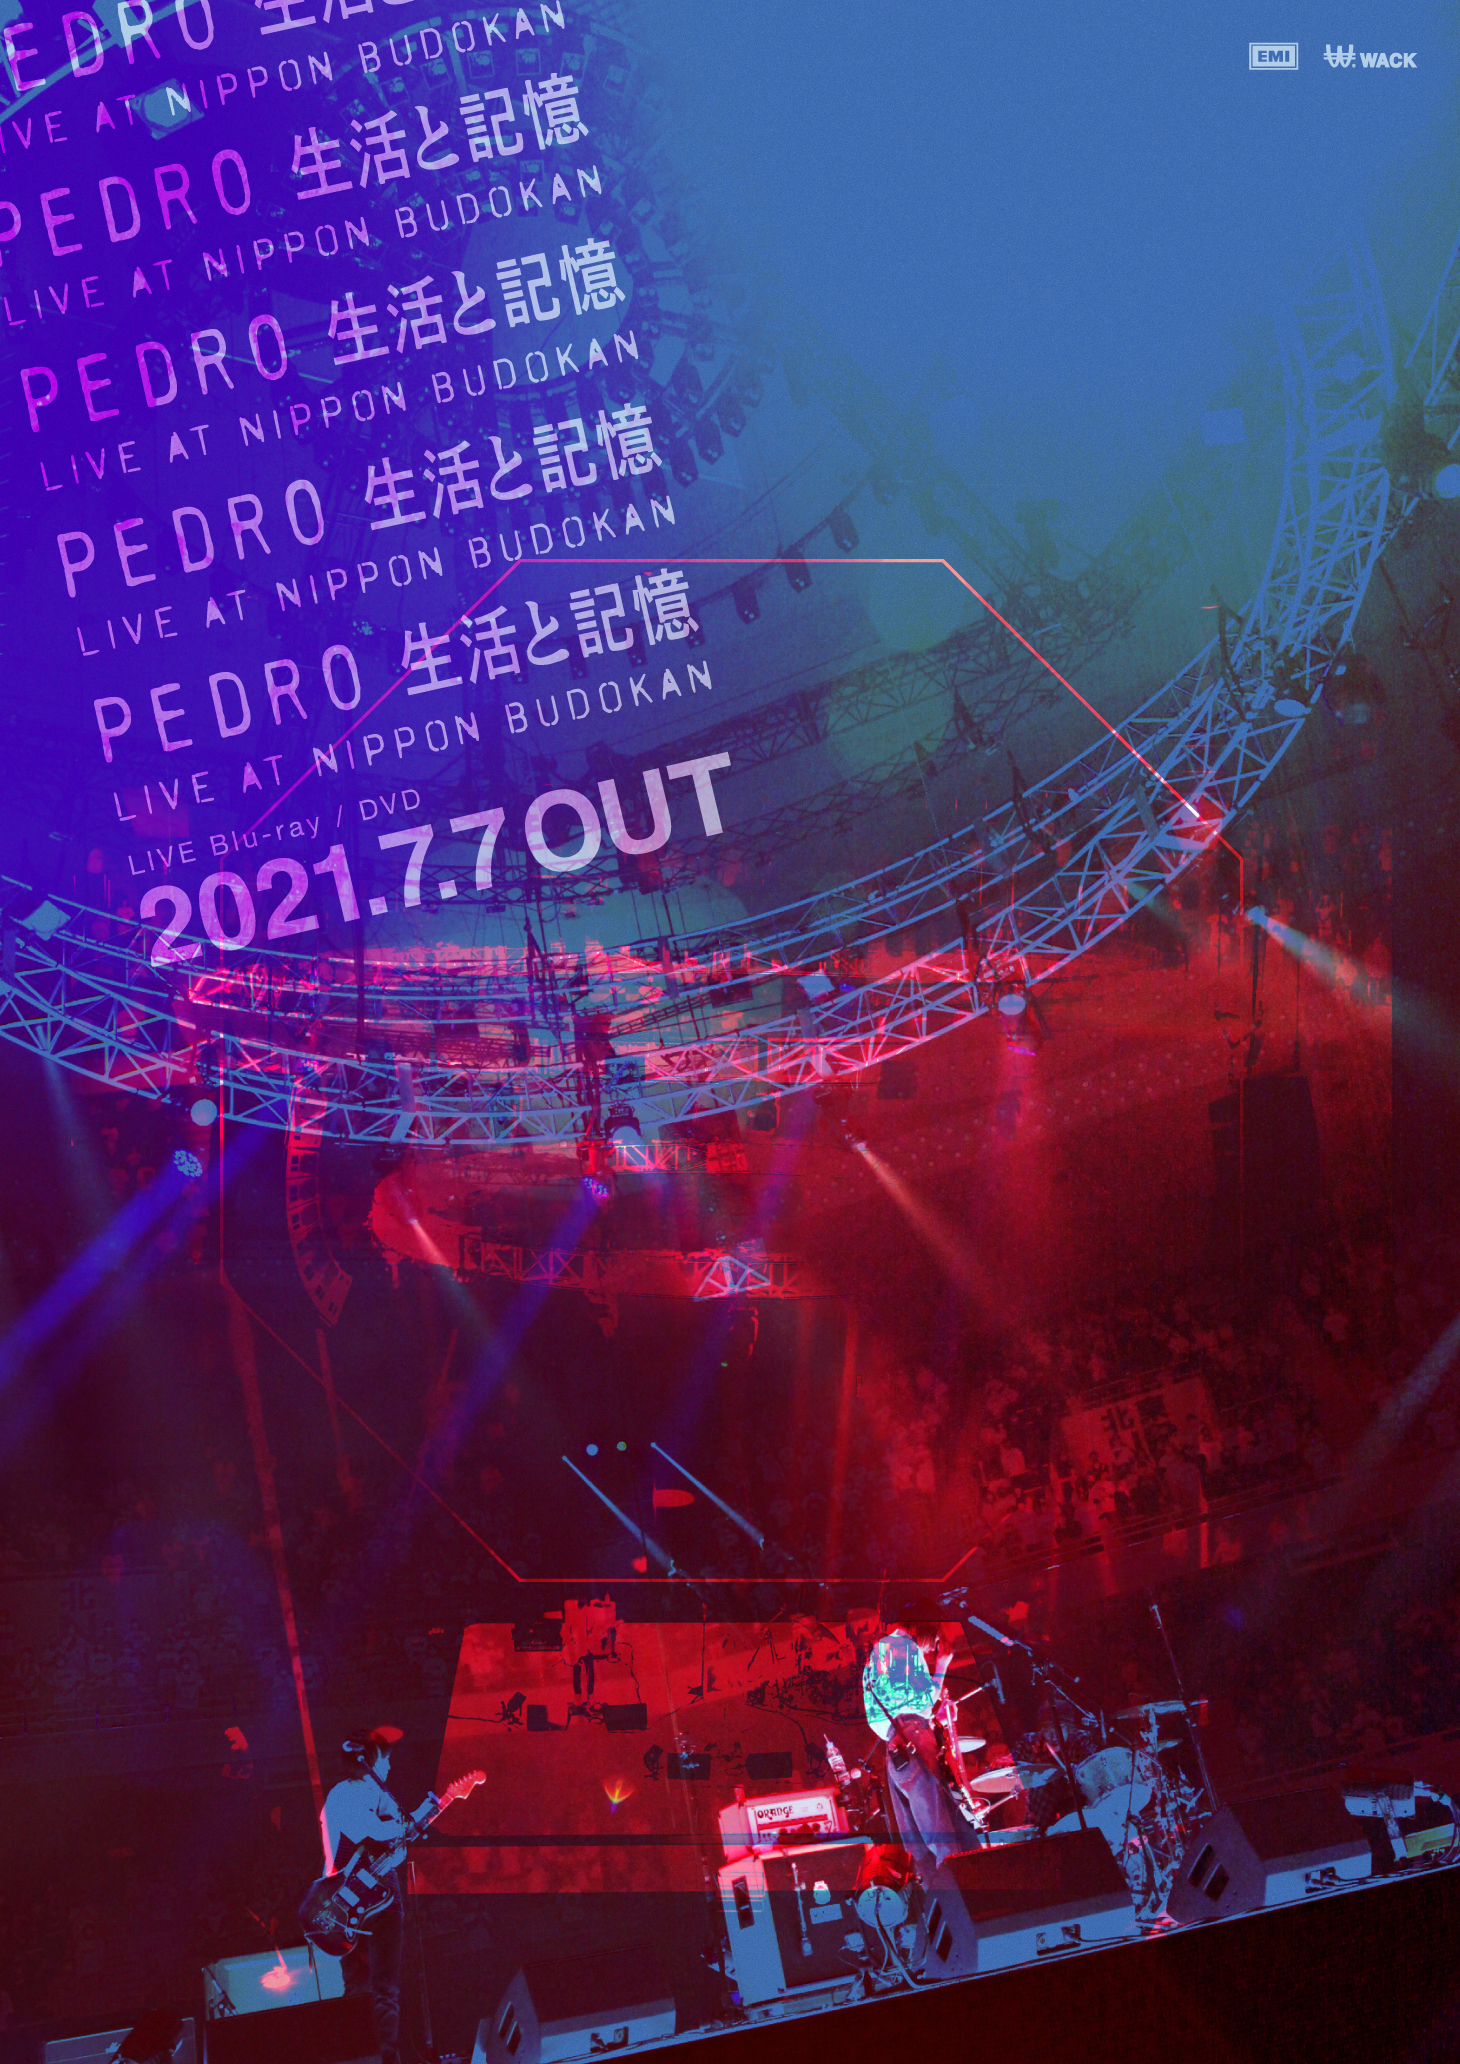 PEDRO FC ライブ映像作品「生活と記憶」【幻のアコースティックライブ